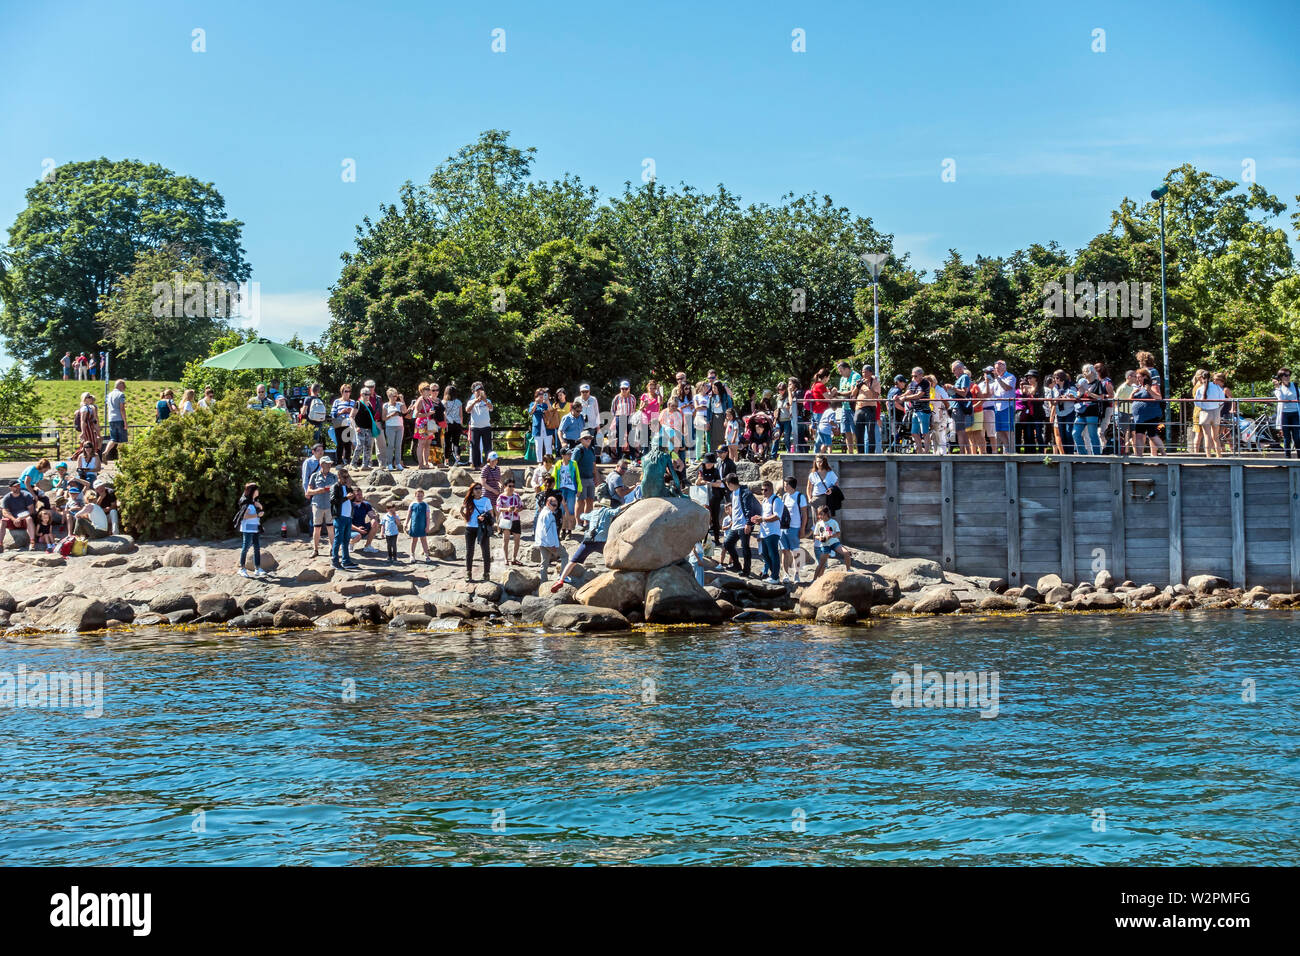 Les touristes et visiteurs entourant Den lille havfrue (la petite sirène) dans le port de Copenhague Danemark Copenhague Langelinie Europe Banque D'Images